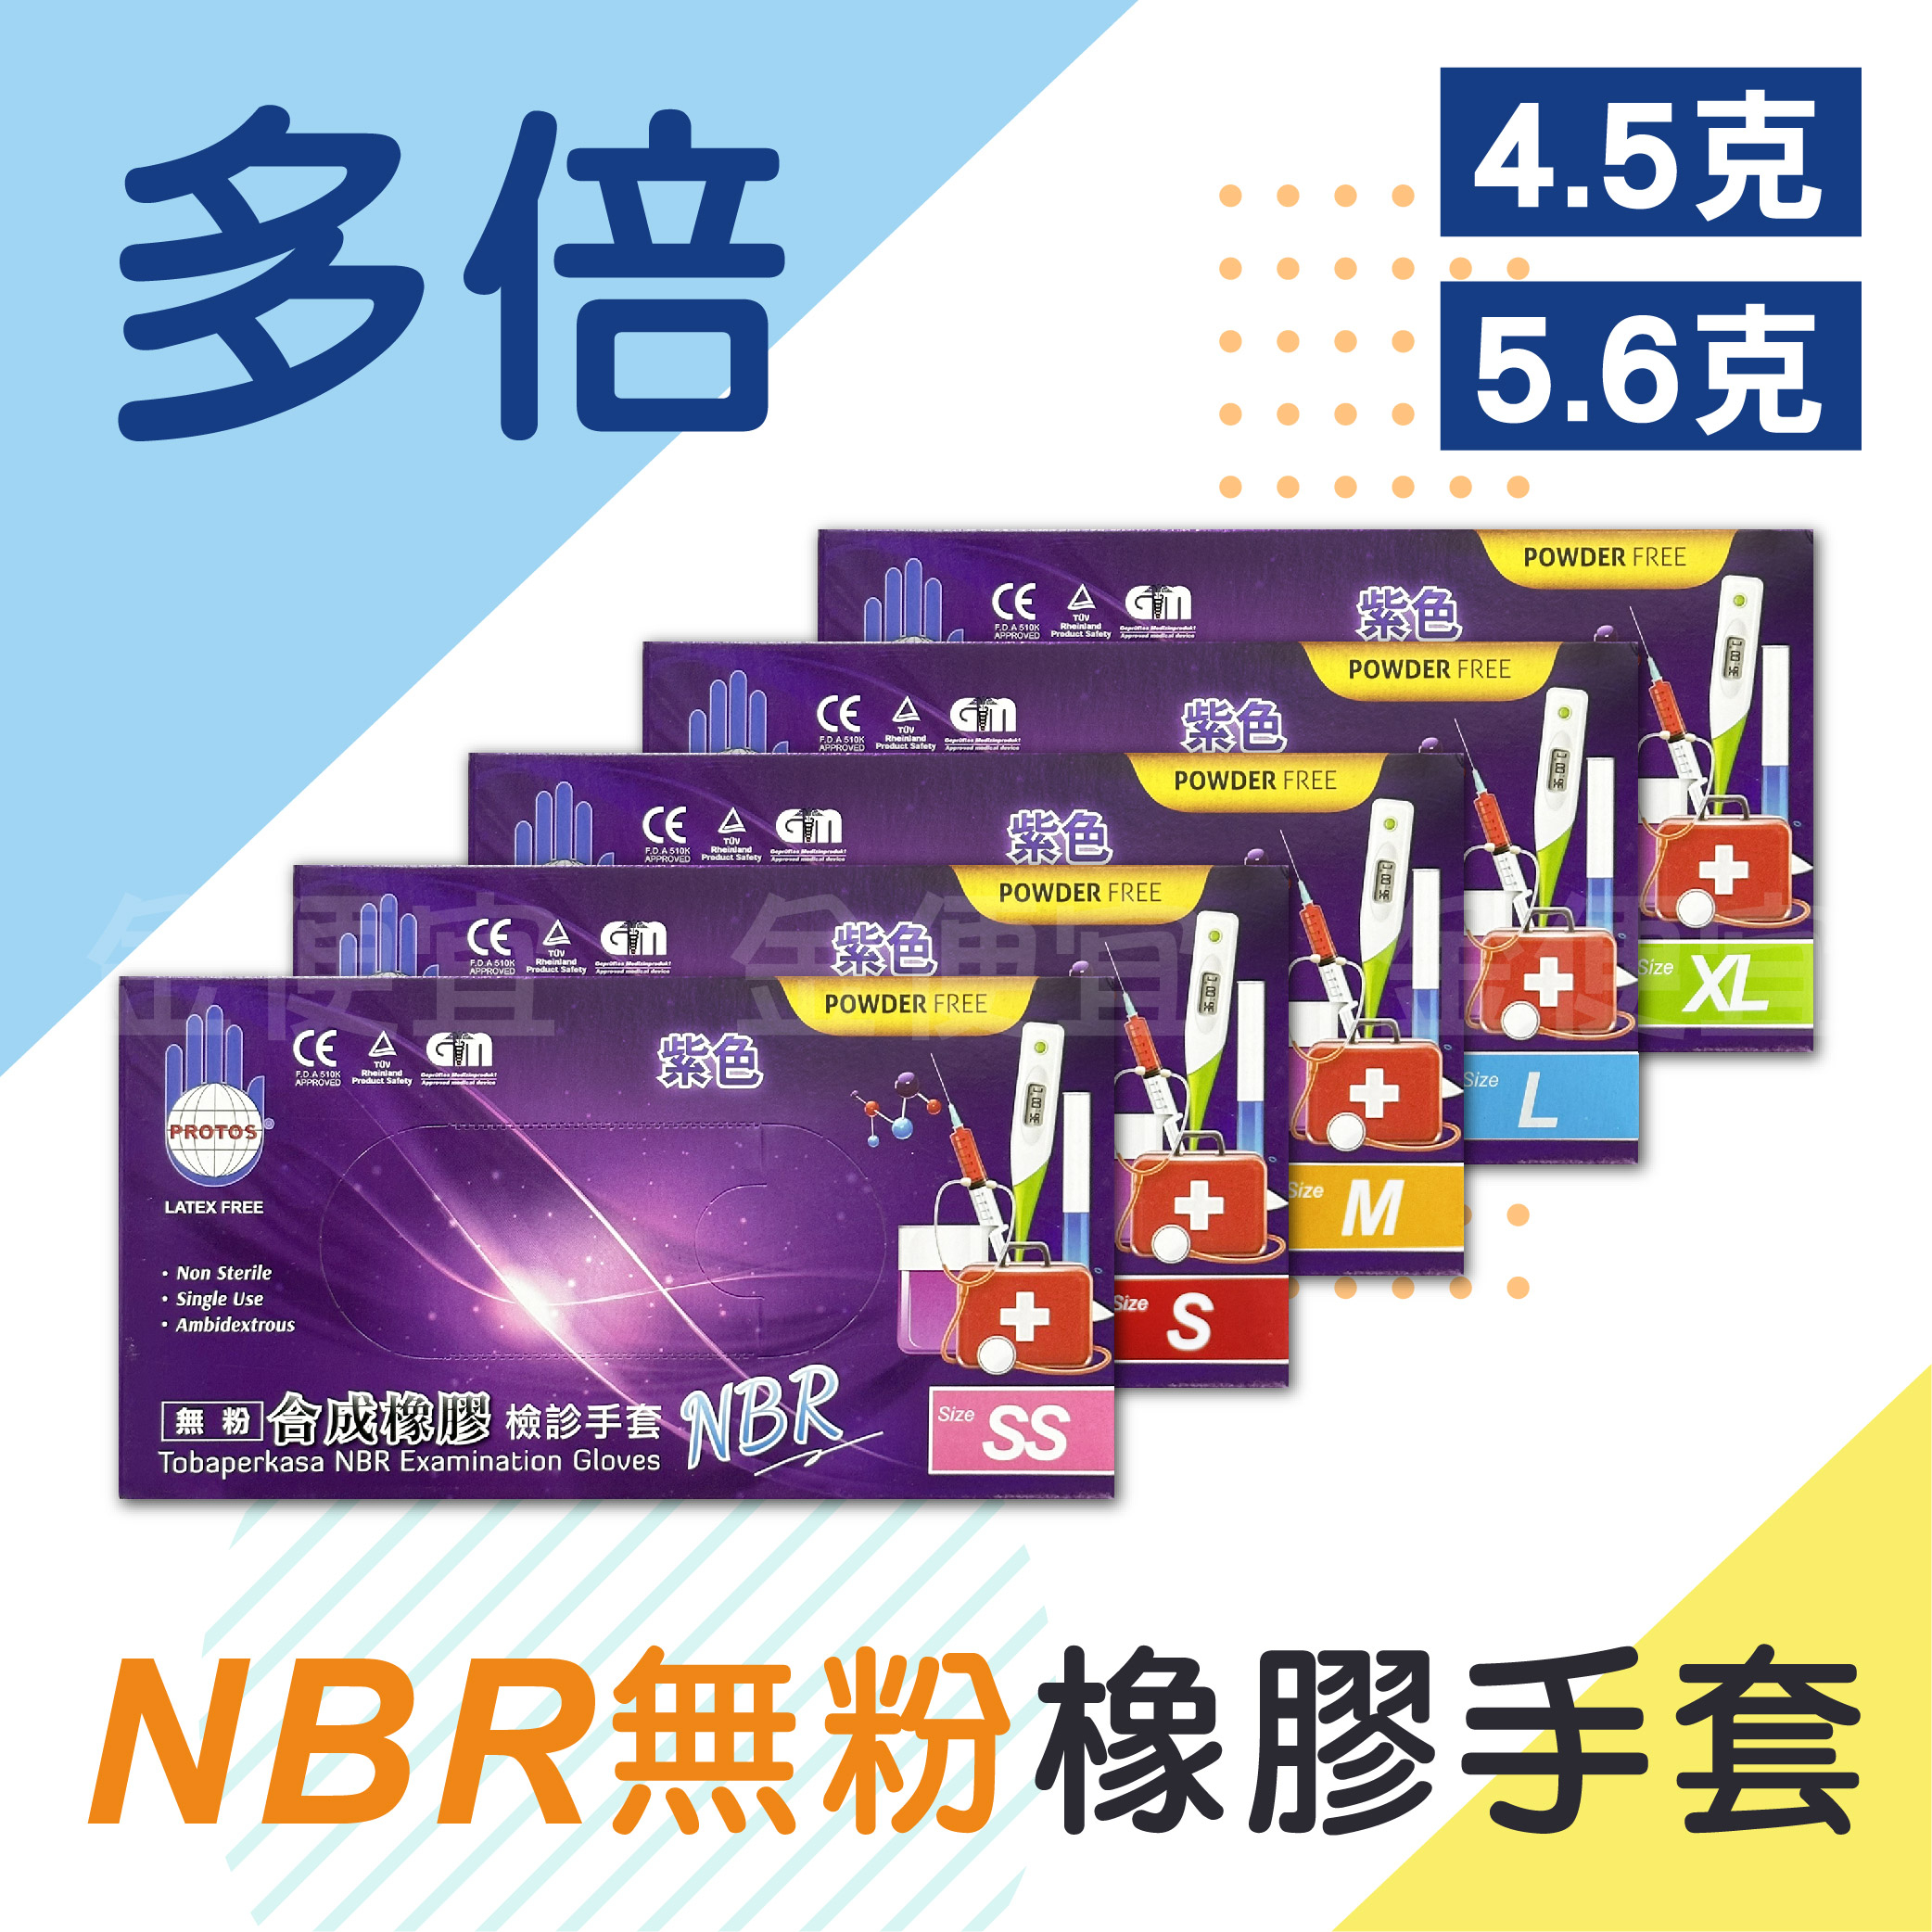 NBR紫色手套 紫色特厚款 PROTOS 多倍 NBR 合成橡膠 檢診手套 紫色手套 檢診手套 SGS認證 食品